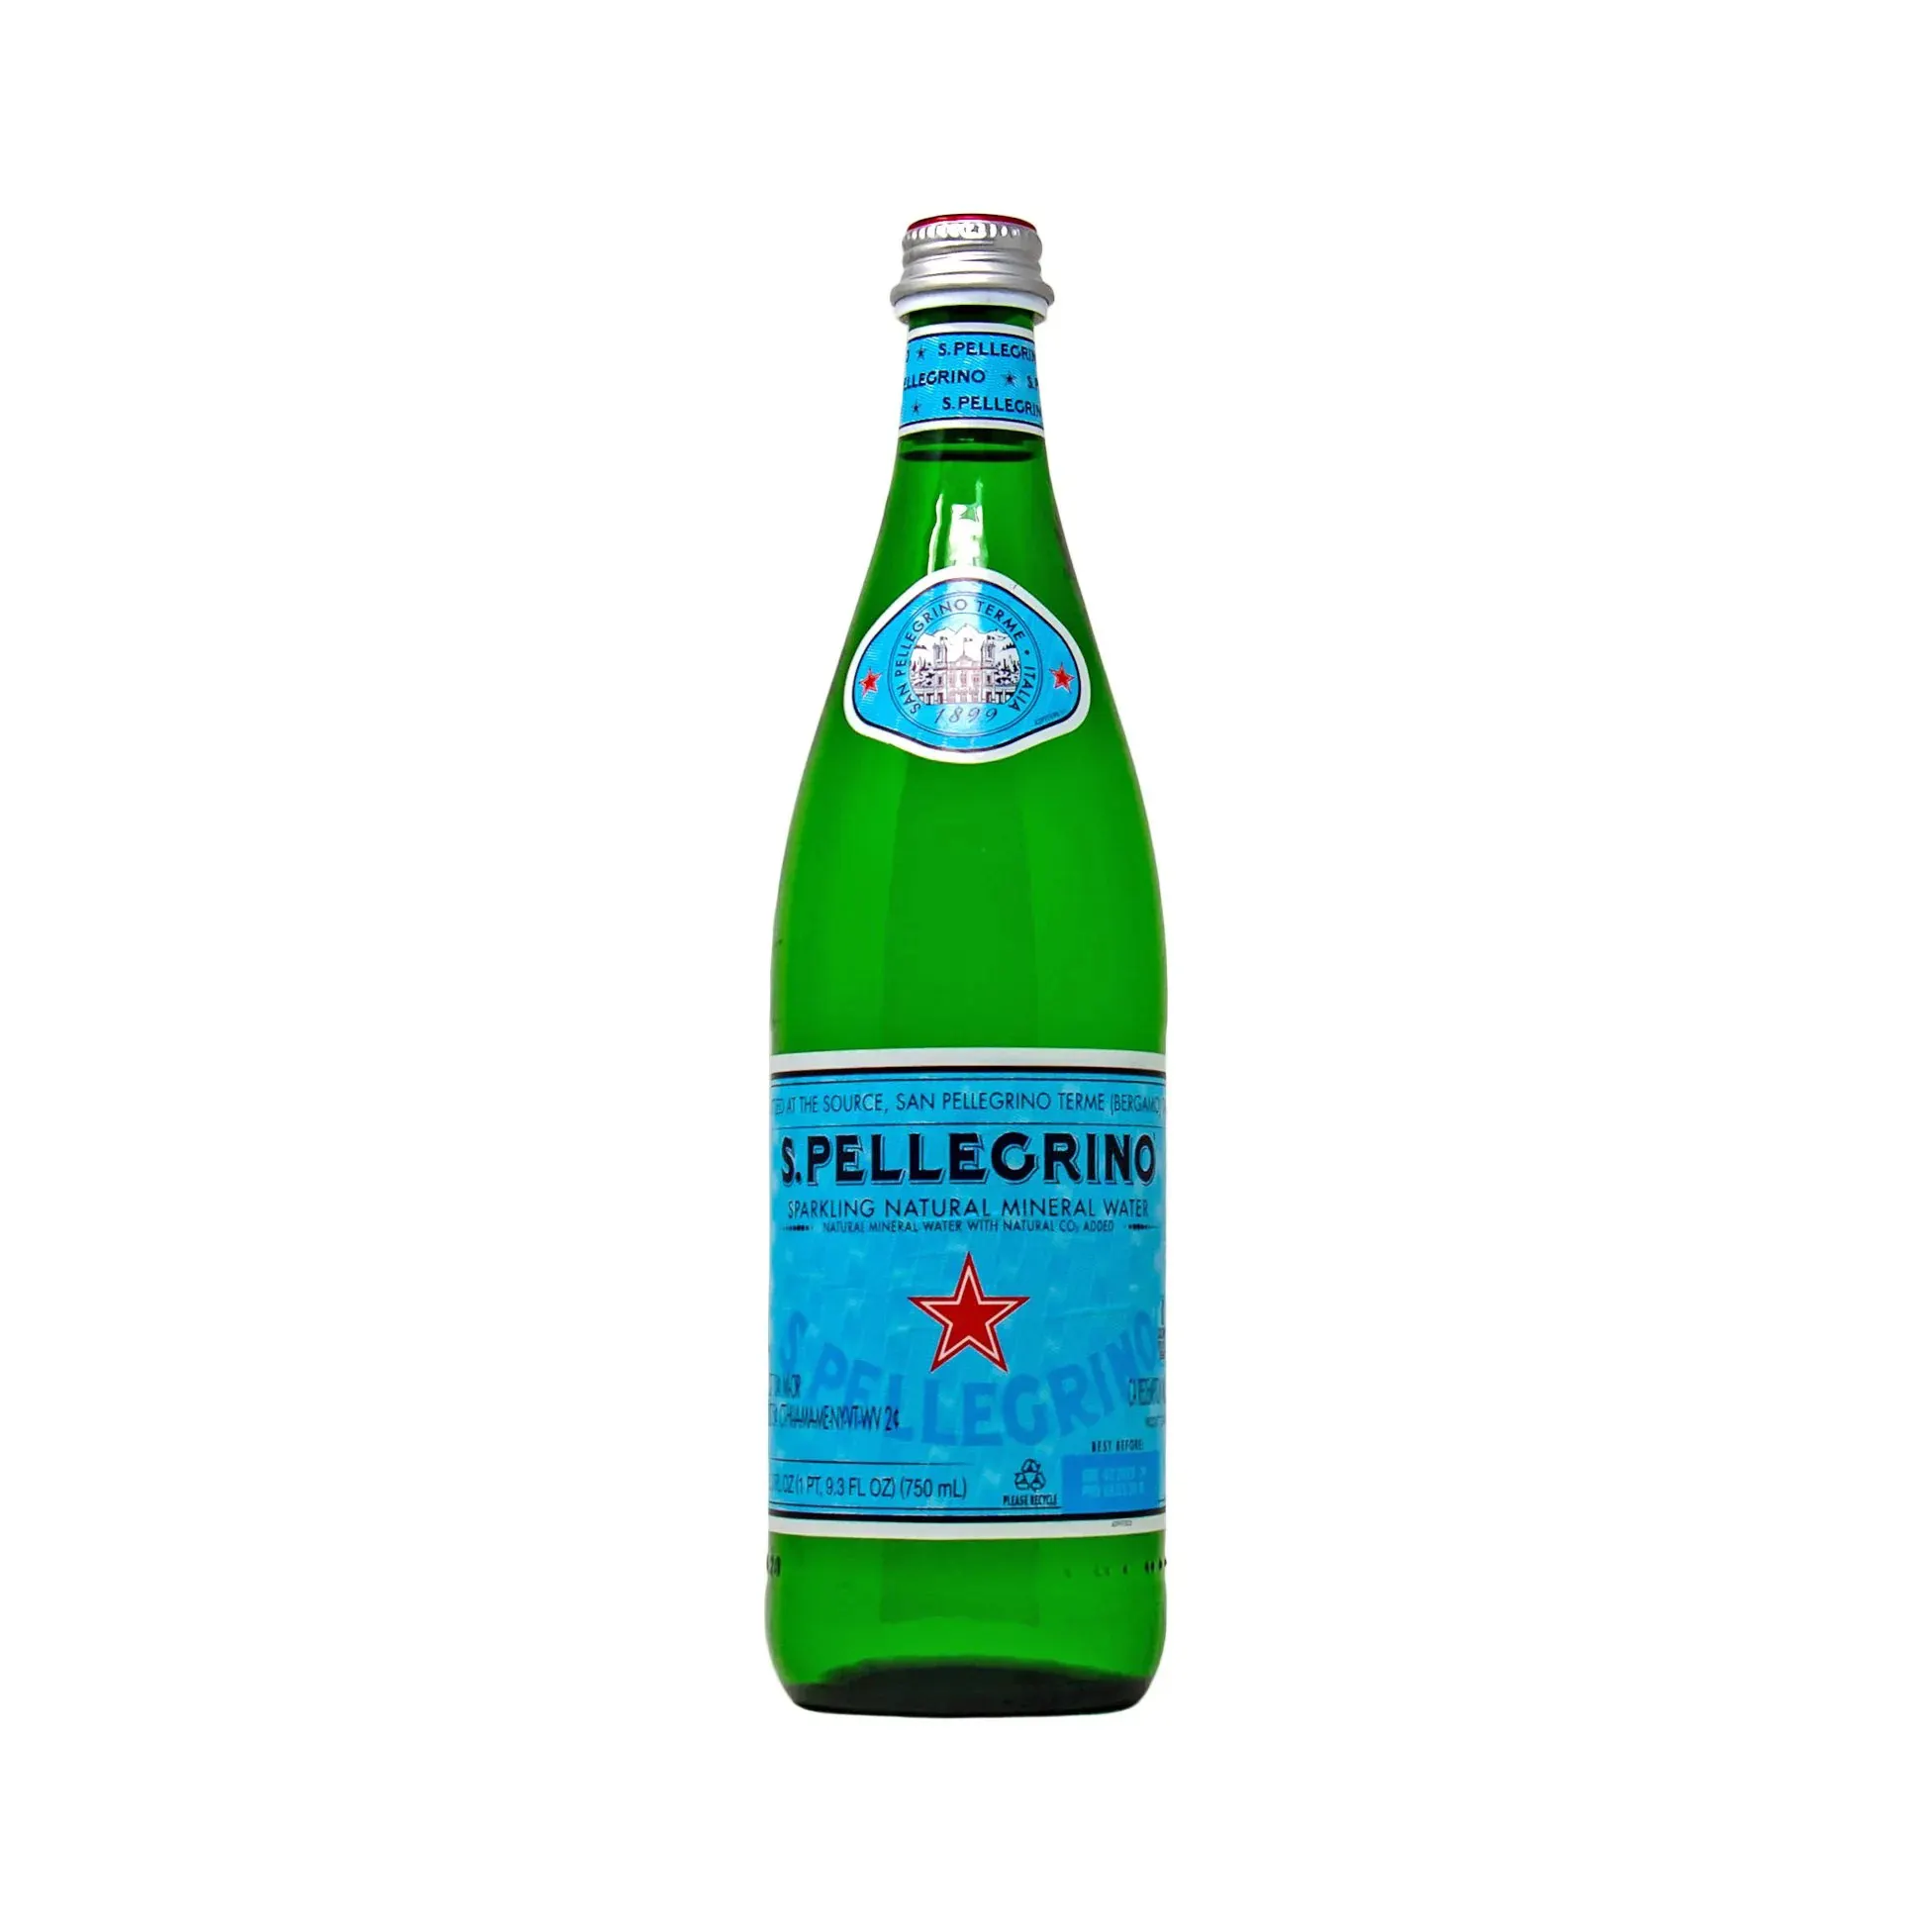 पेलेग्रिनो स्पार्कलिंग प्राकृतिक खनिज पानी, 8.45 फ्लोज (6 की बोतलों का पैक) सर्वोत्तम मूल्य पर खरीदें